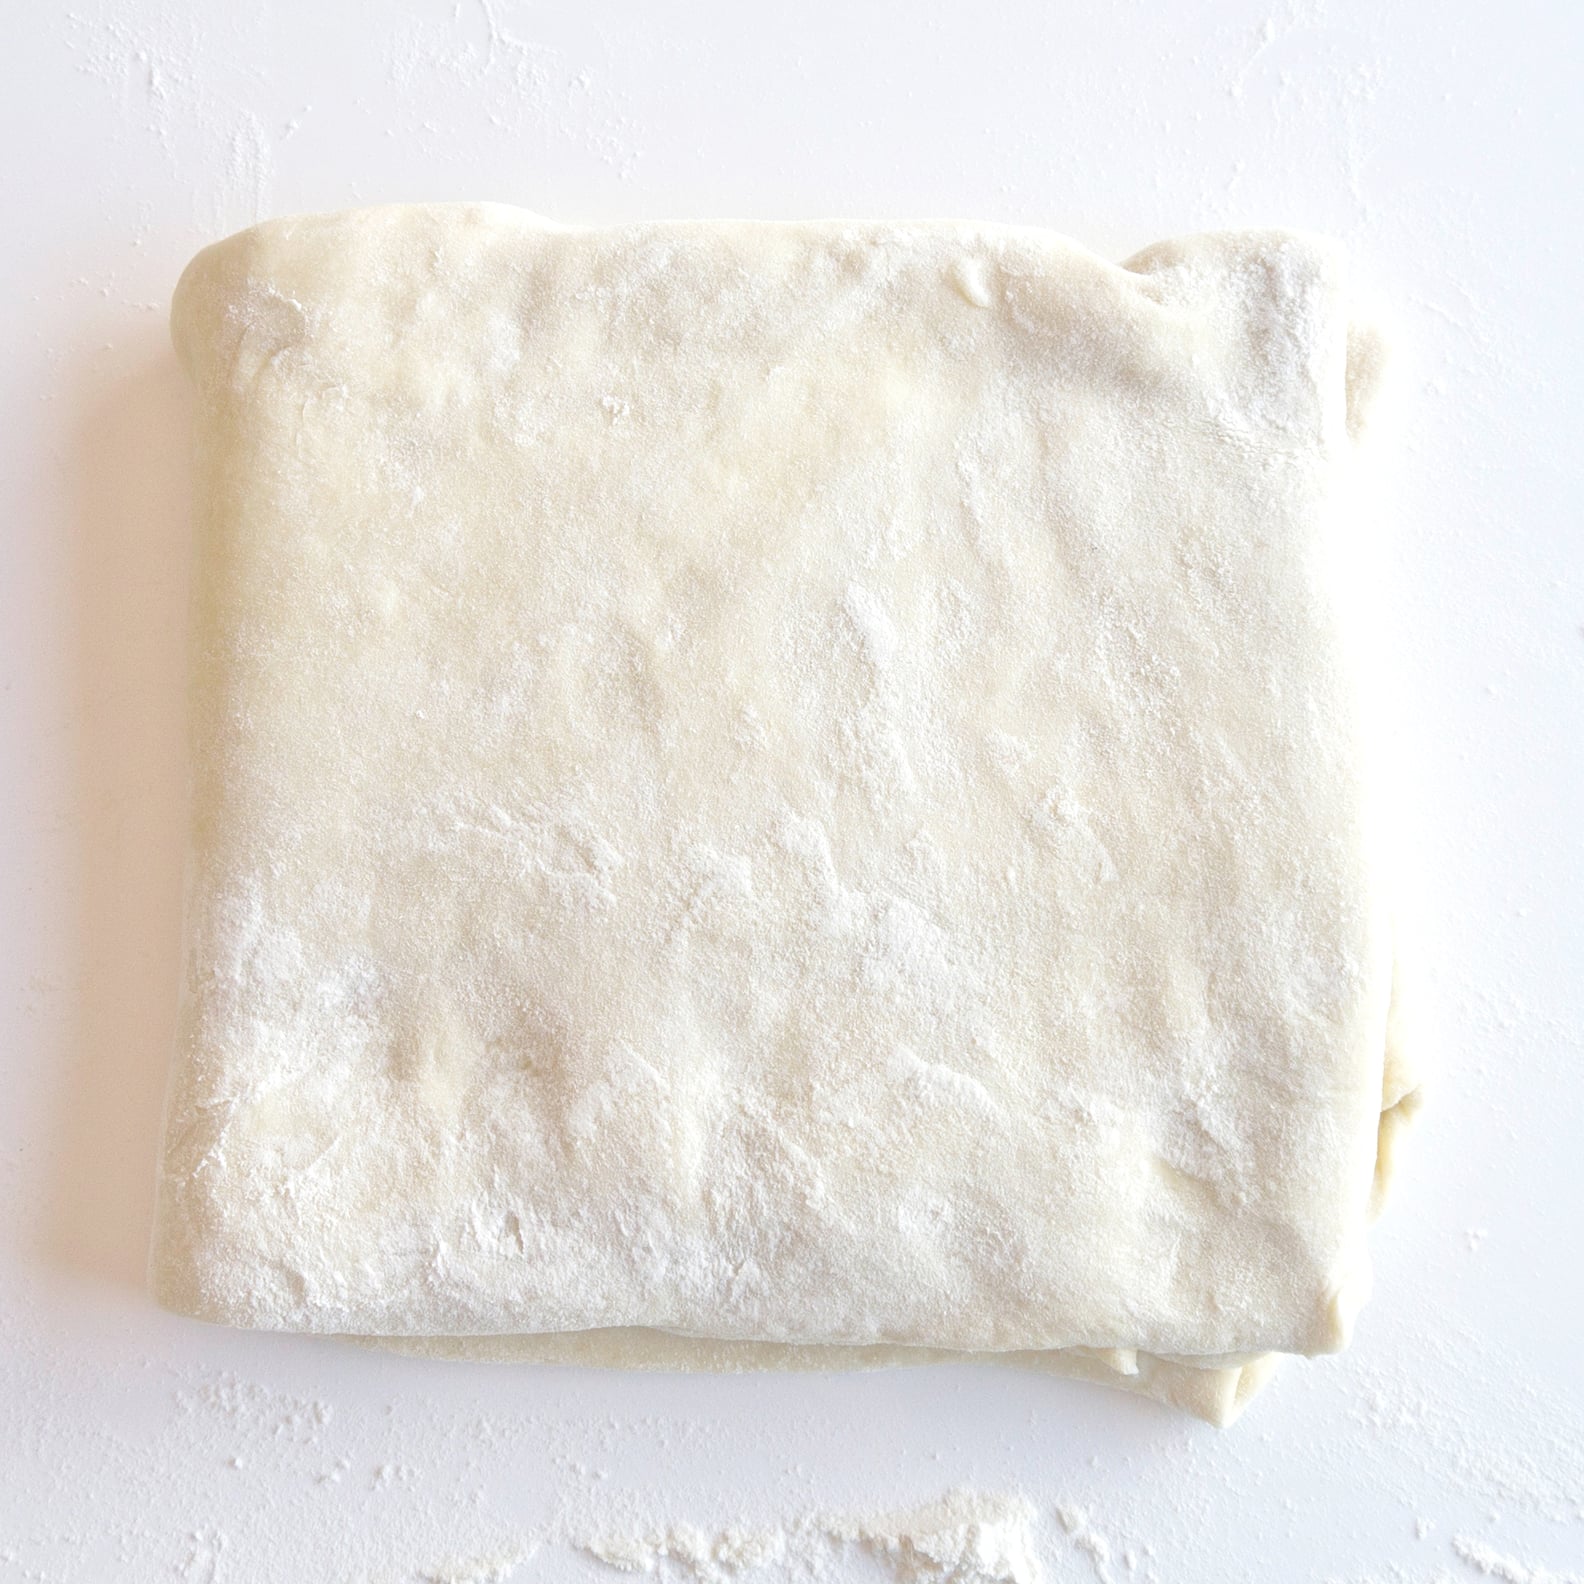 How to Laminate Dough | POPSUGAR Food